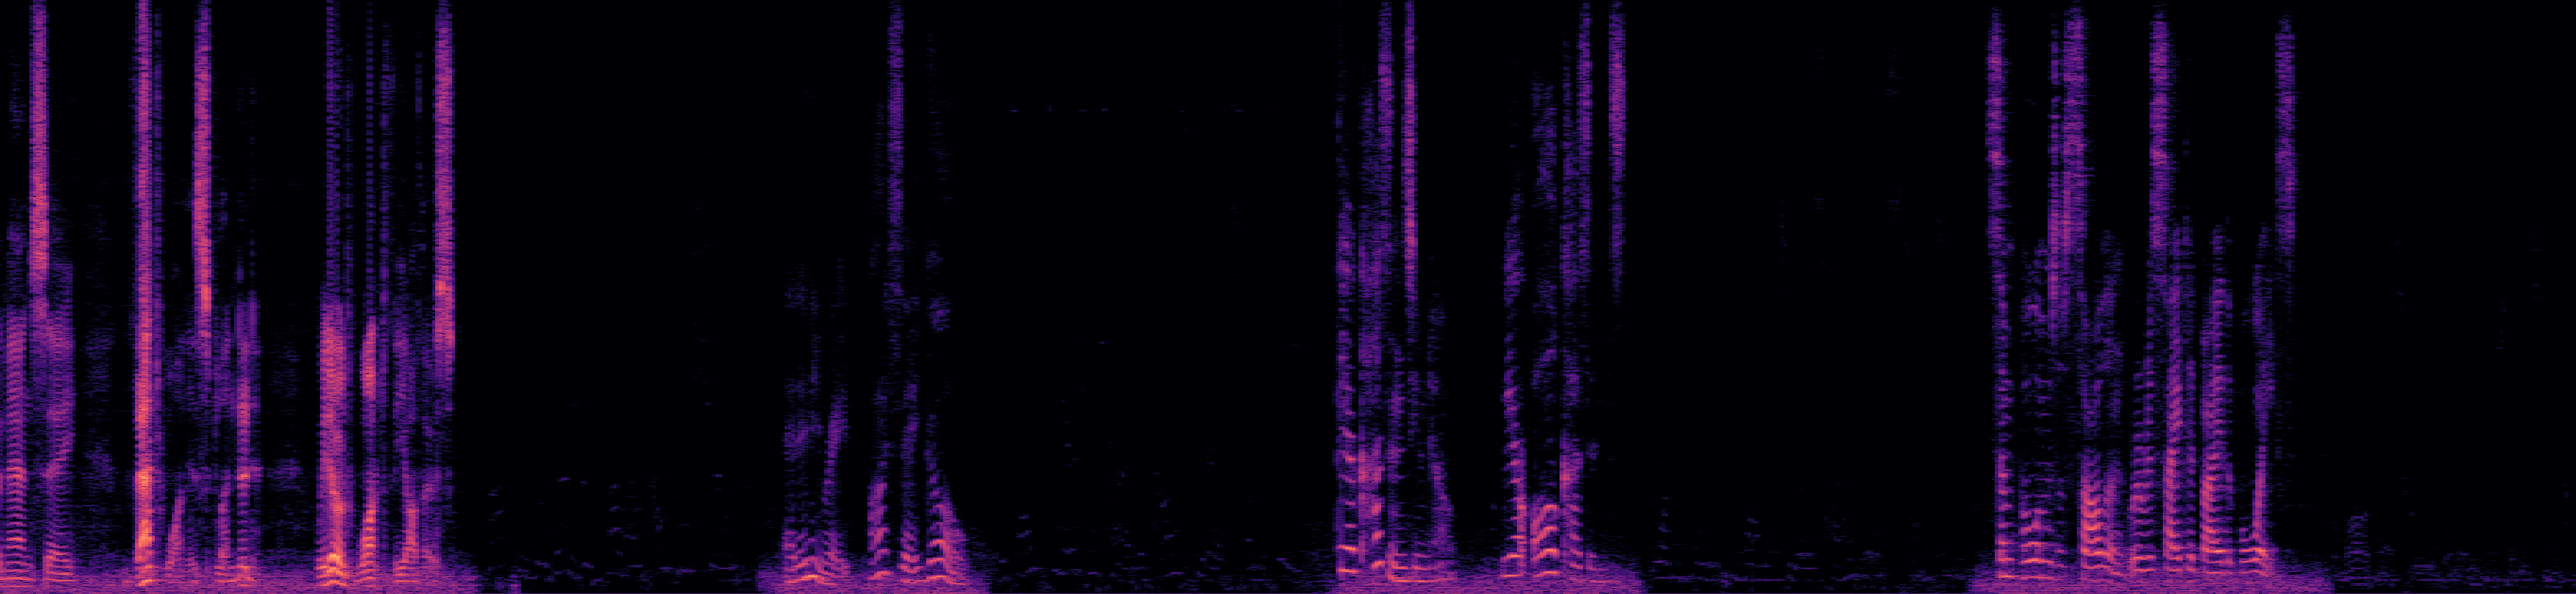 Spectrogram of Stream 2